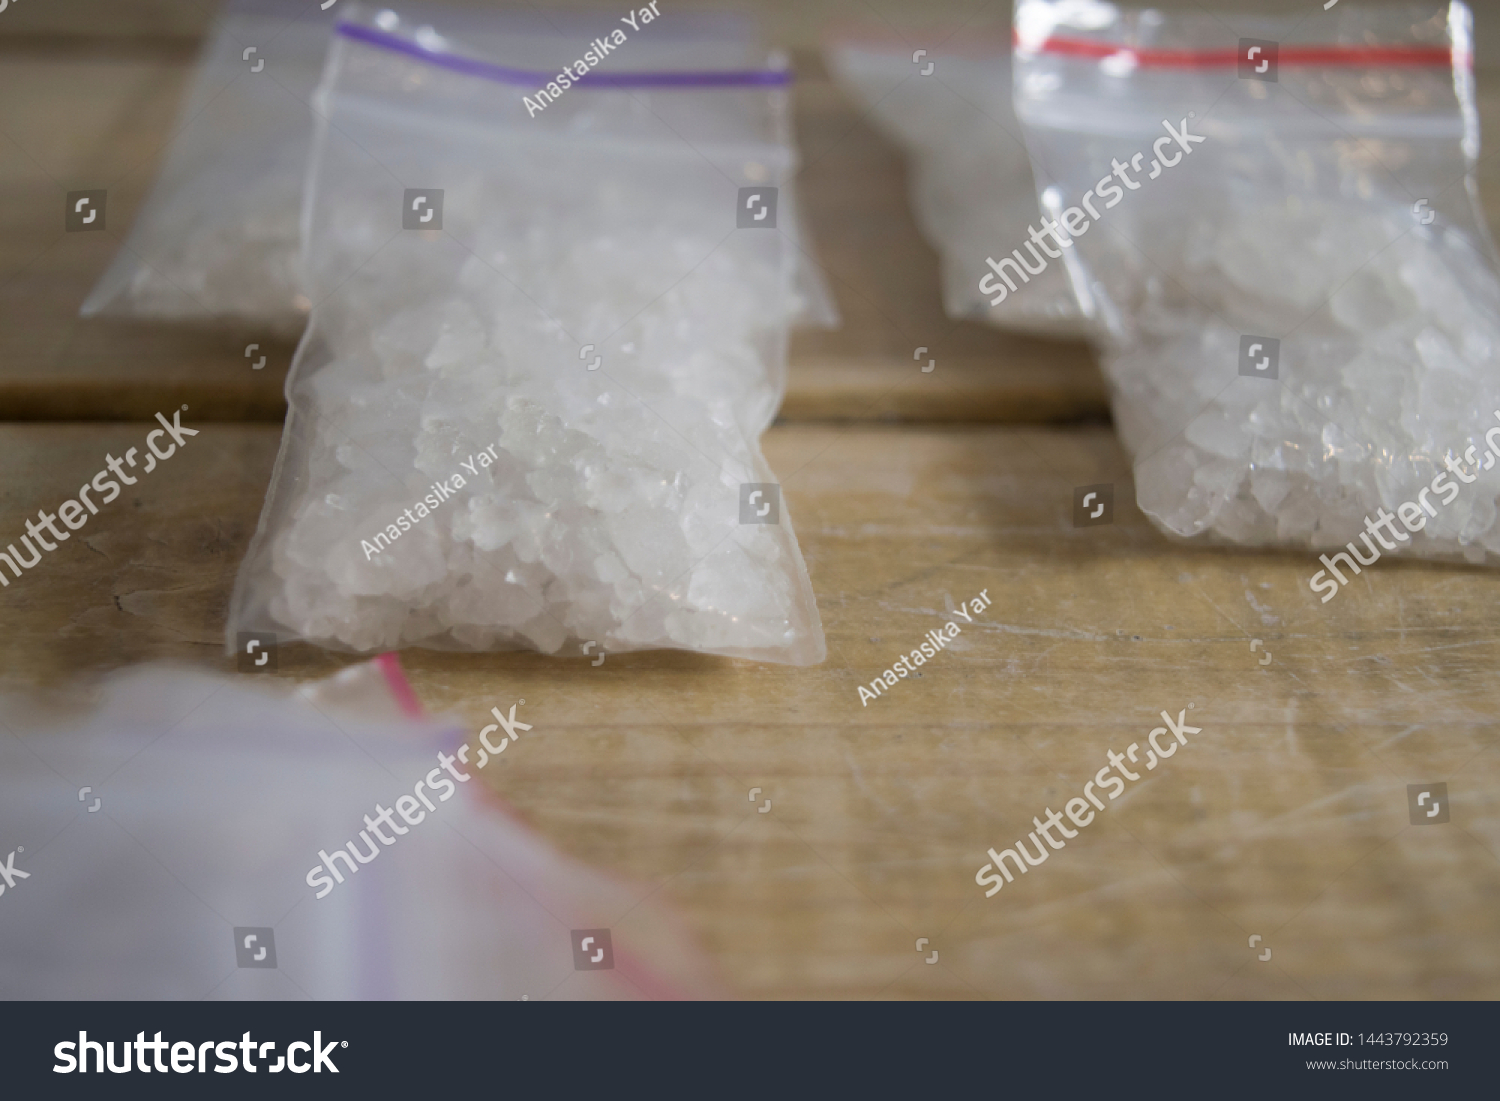 Bath salts drug. Flakka or Alpha-PVP drug. Drug trafficing concept. Illicit substances. Designer drugs. Close up od drug packaging on wooden table. Crystal meth packed. #1443792359